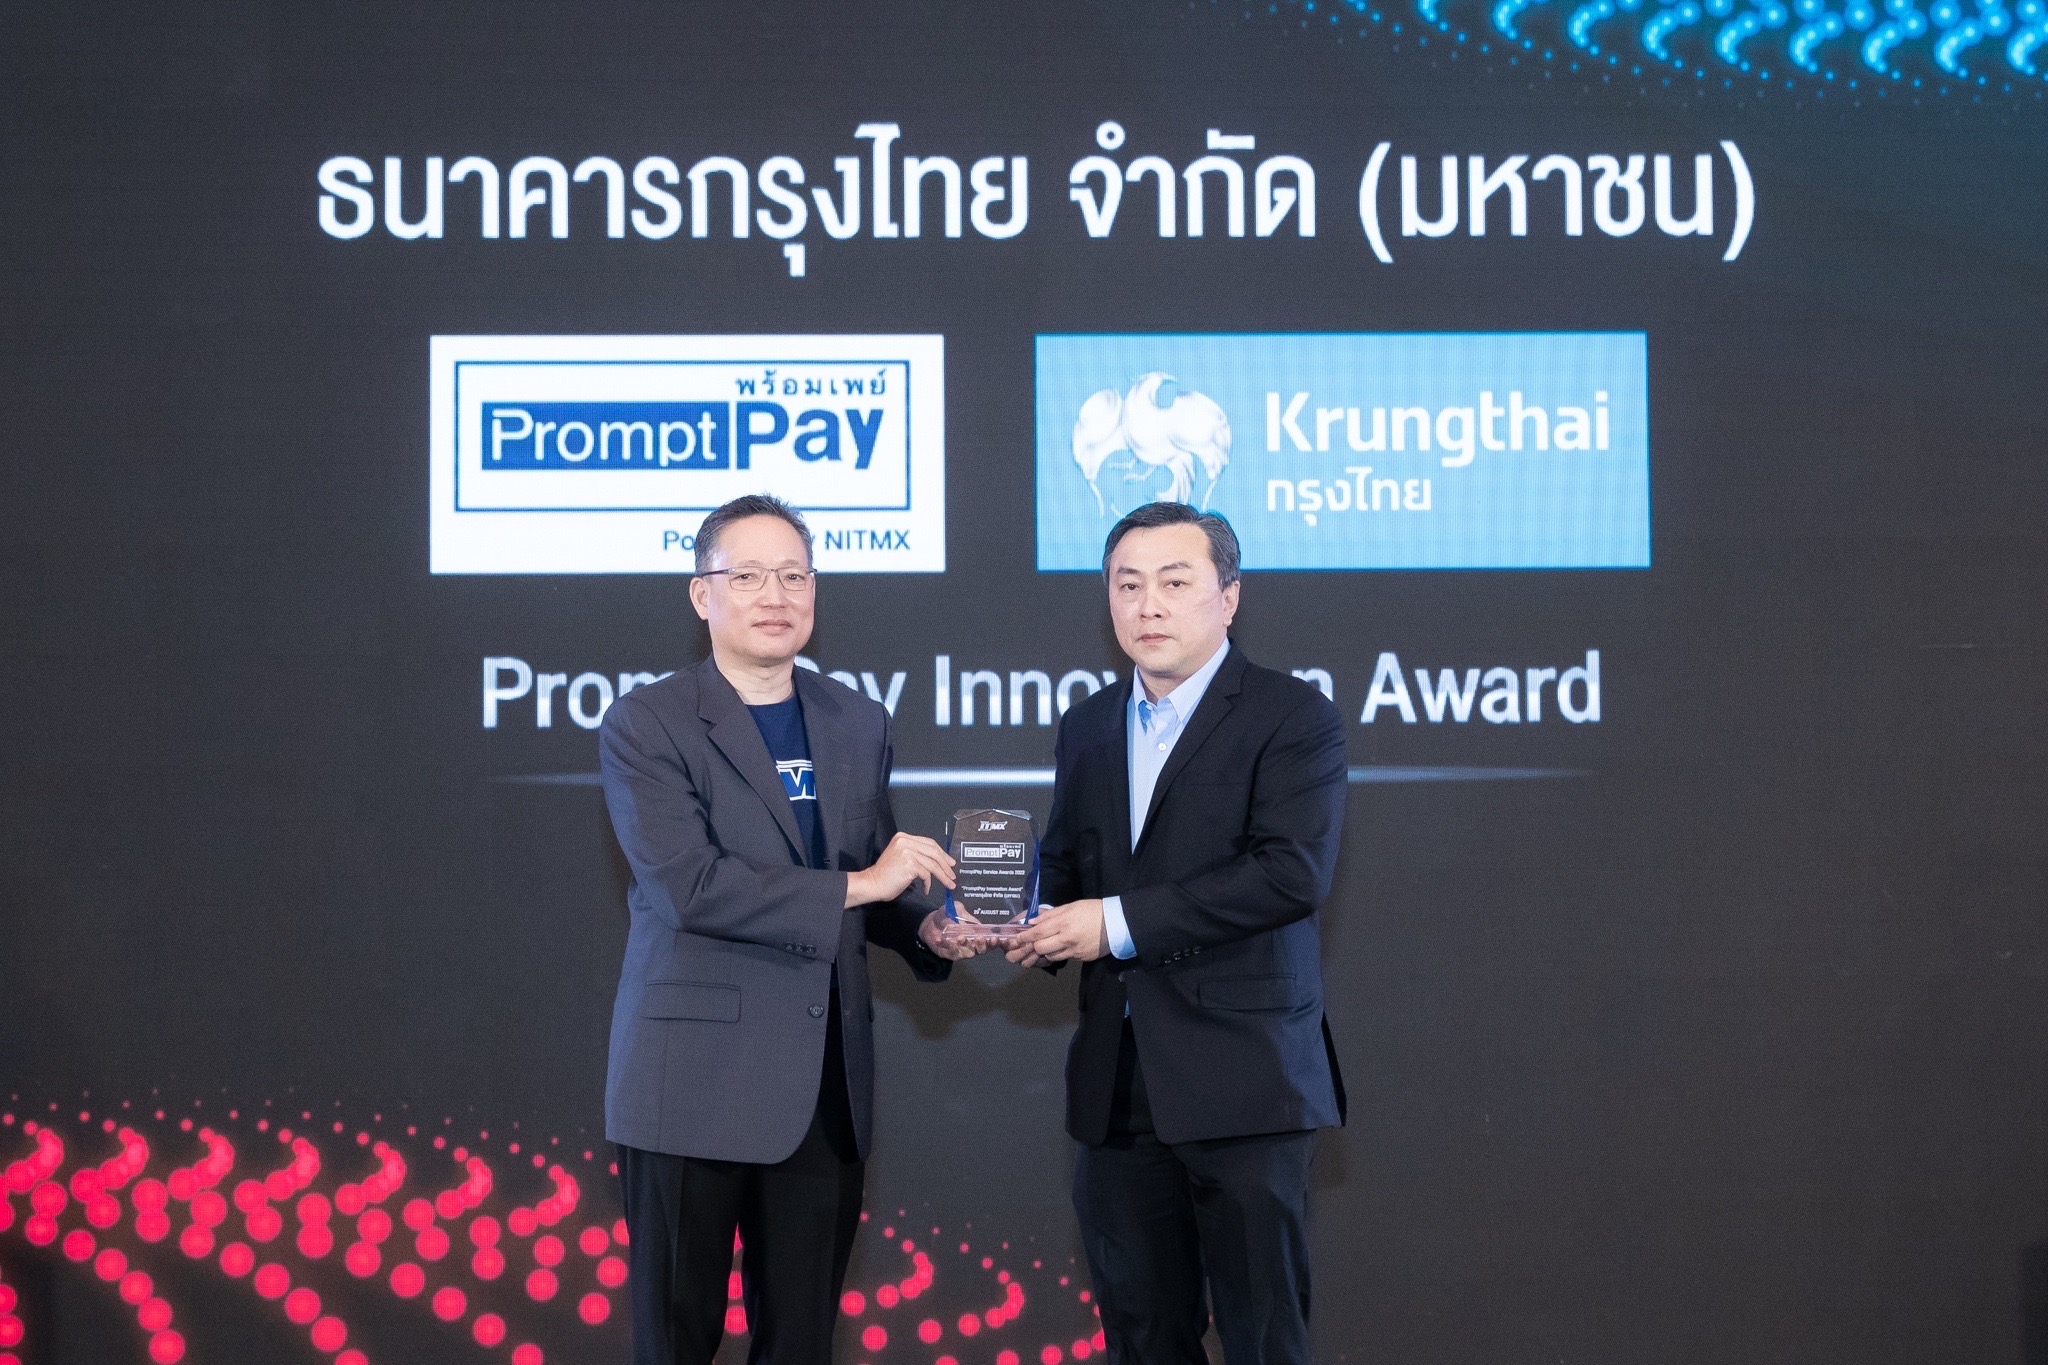 “กรุงไทย” คว้า “PromptPay Innovation Award” ตอกย้ำความสำเร็จชูนวัตกรรมขับเคลื่อนเศรษฐกิจดิจิทัล